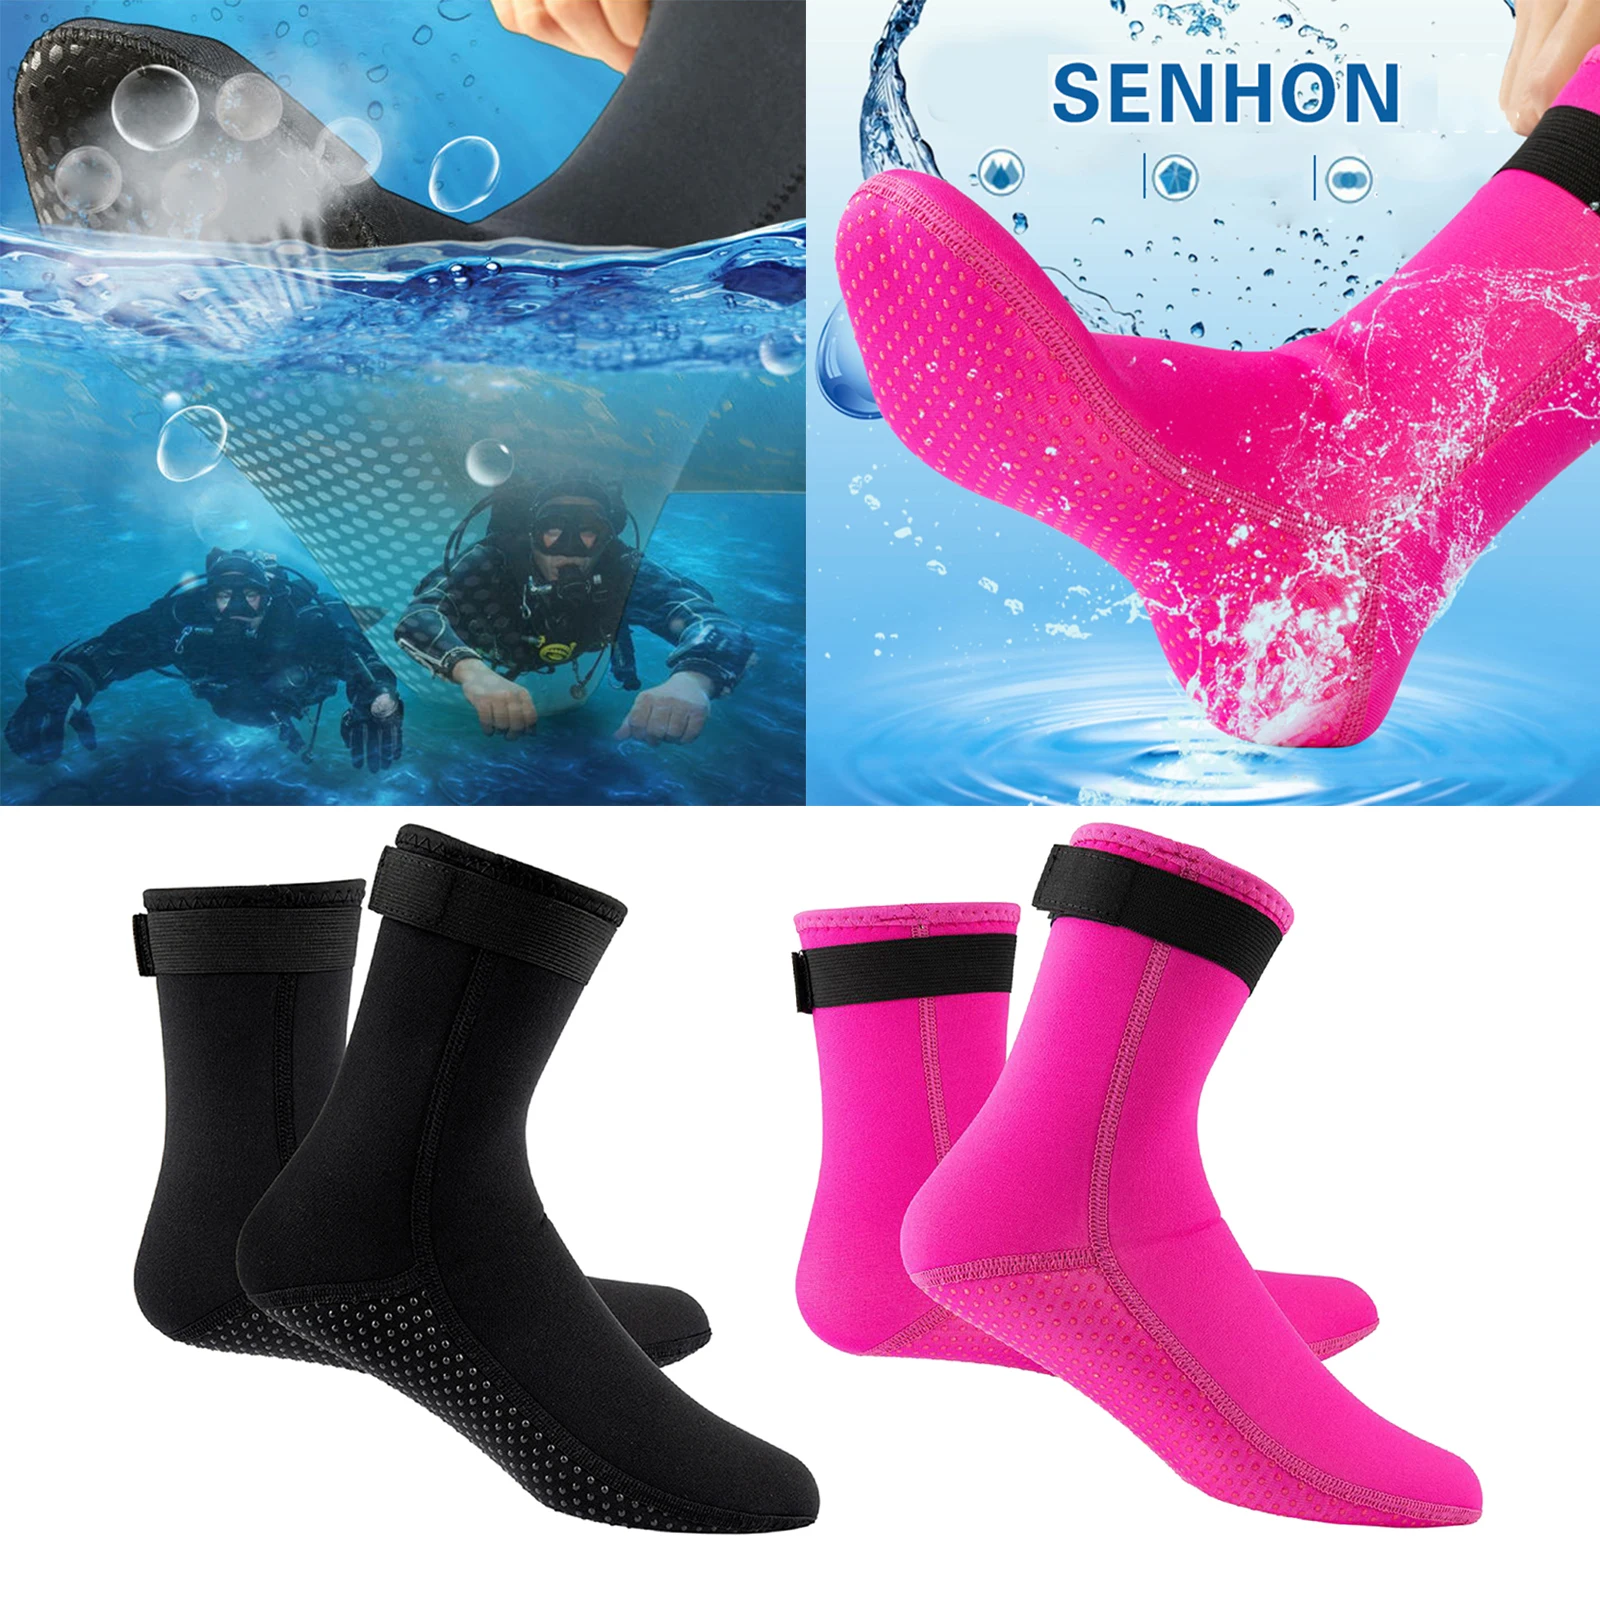 3mm Neoprene Diving Socks Wetsuit Socks Water Sport Scuba Socks Booties Swimming Fin for Women Men Running Skiing Kayaking